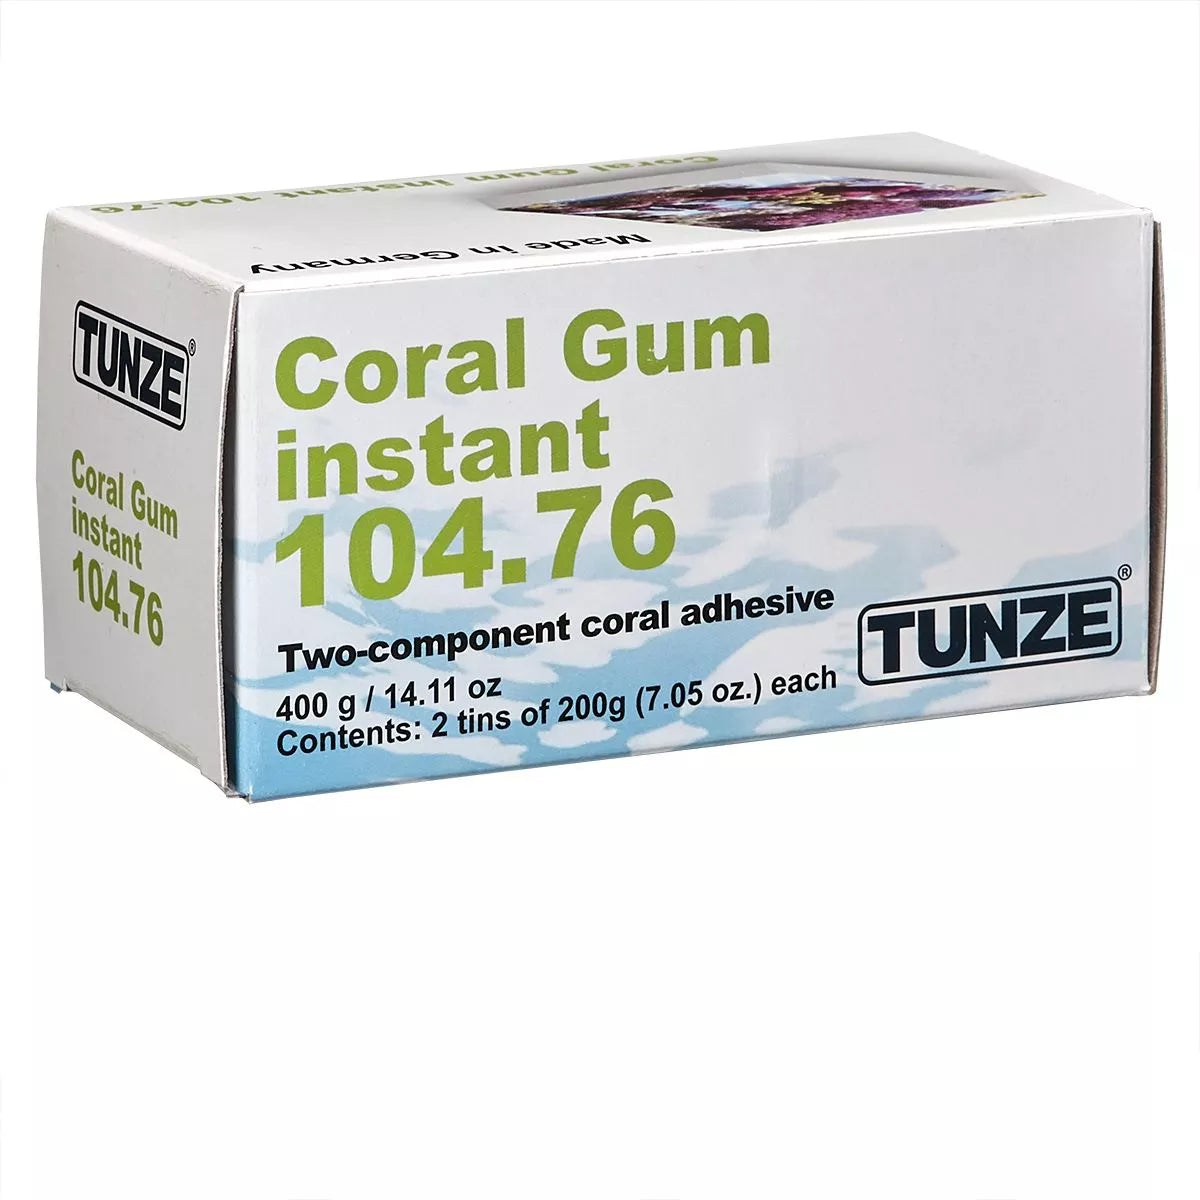 Coral Gum instant,400g(14.11oz)